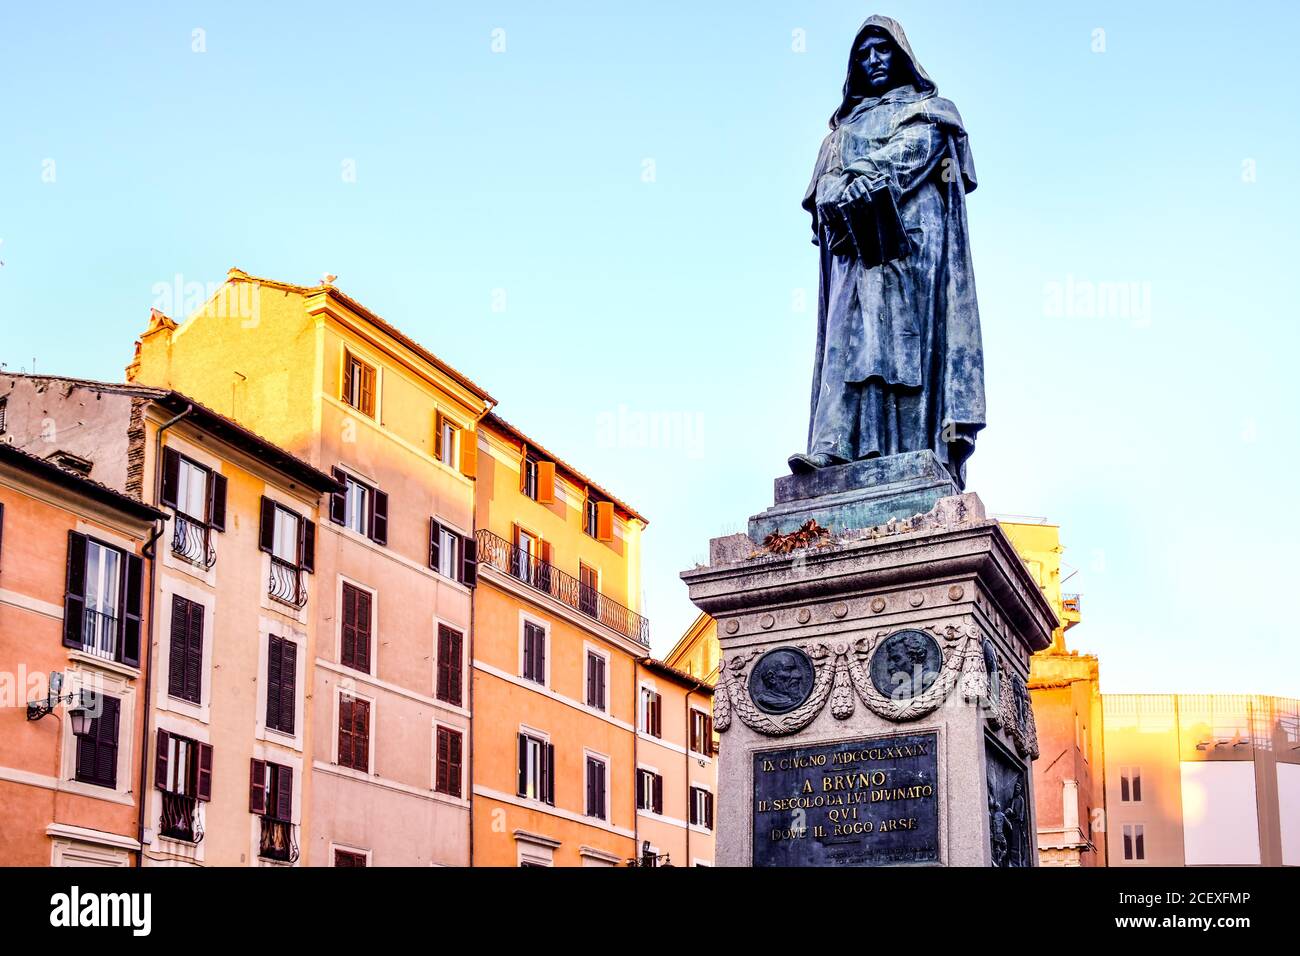 Monument to Giordano Bruno at Campo dei Fiori in central Rome at sunset Stock Photo